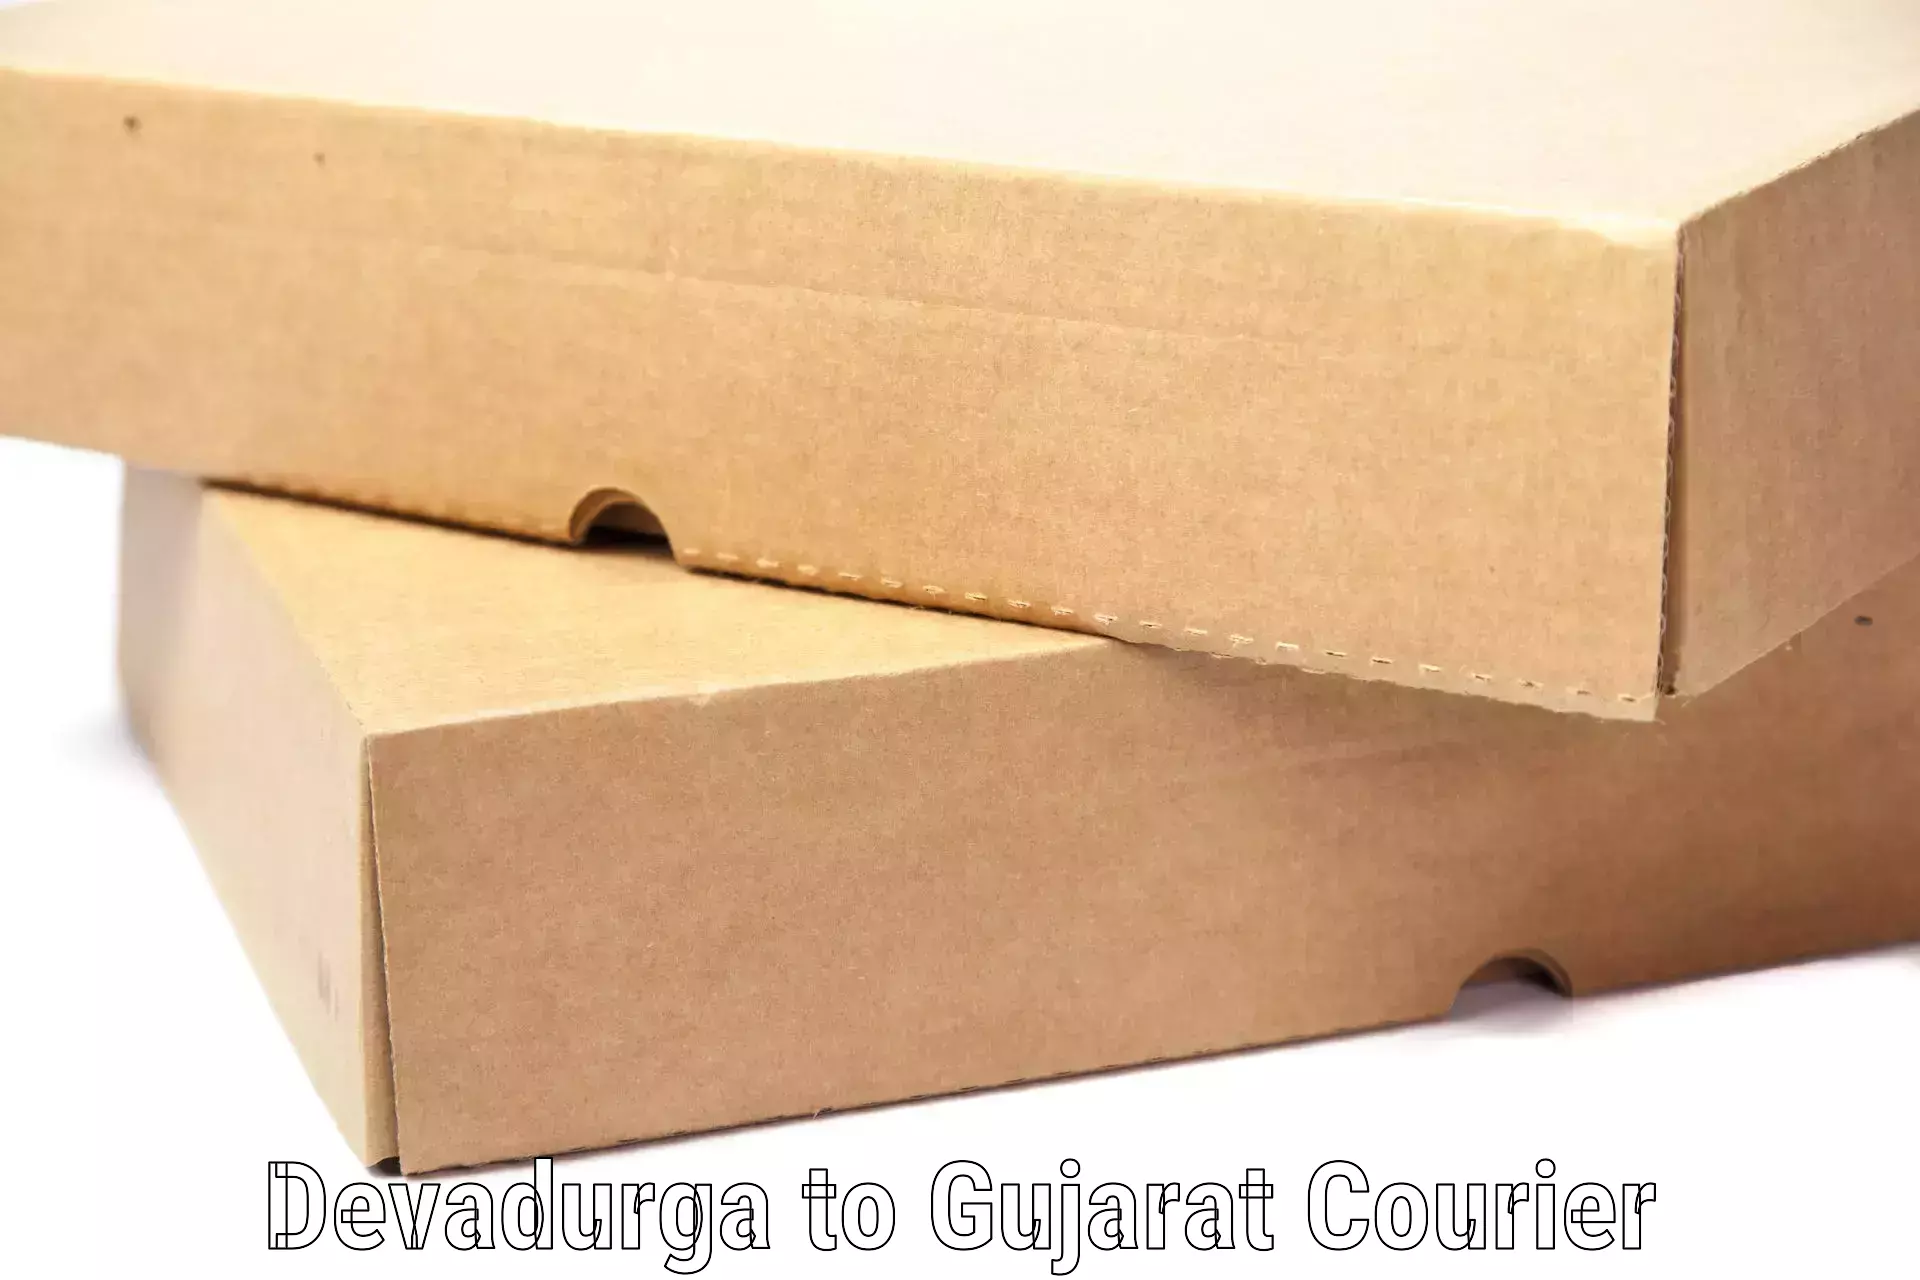 Baggage delivery scheduling Devadurga to Gujarat